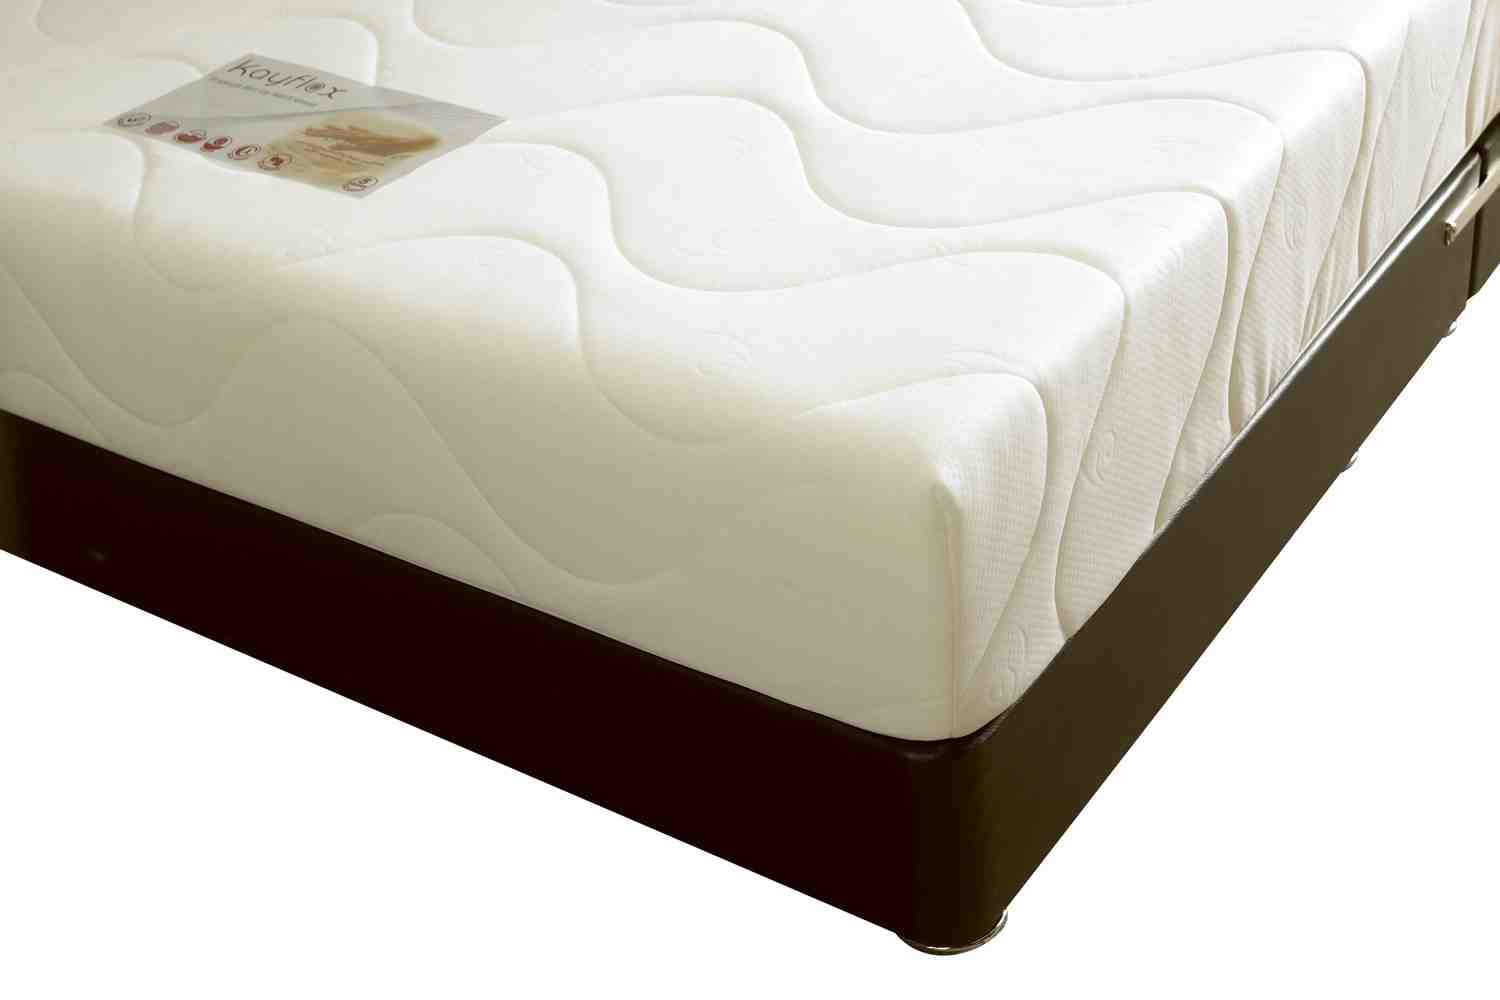 cheap foam for a mattress